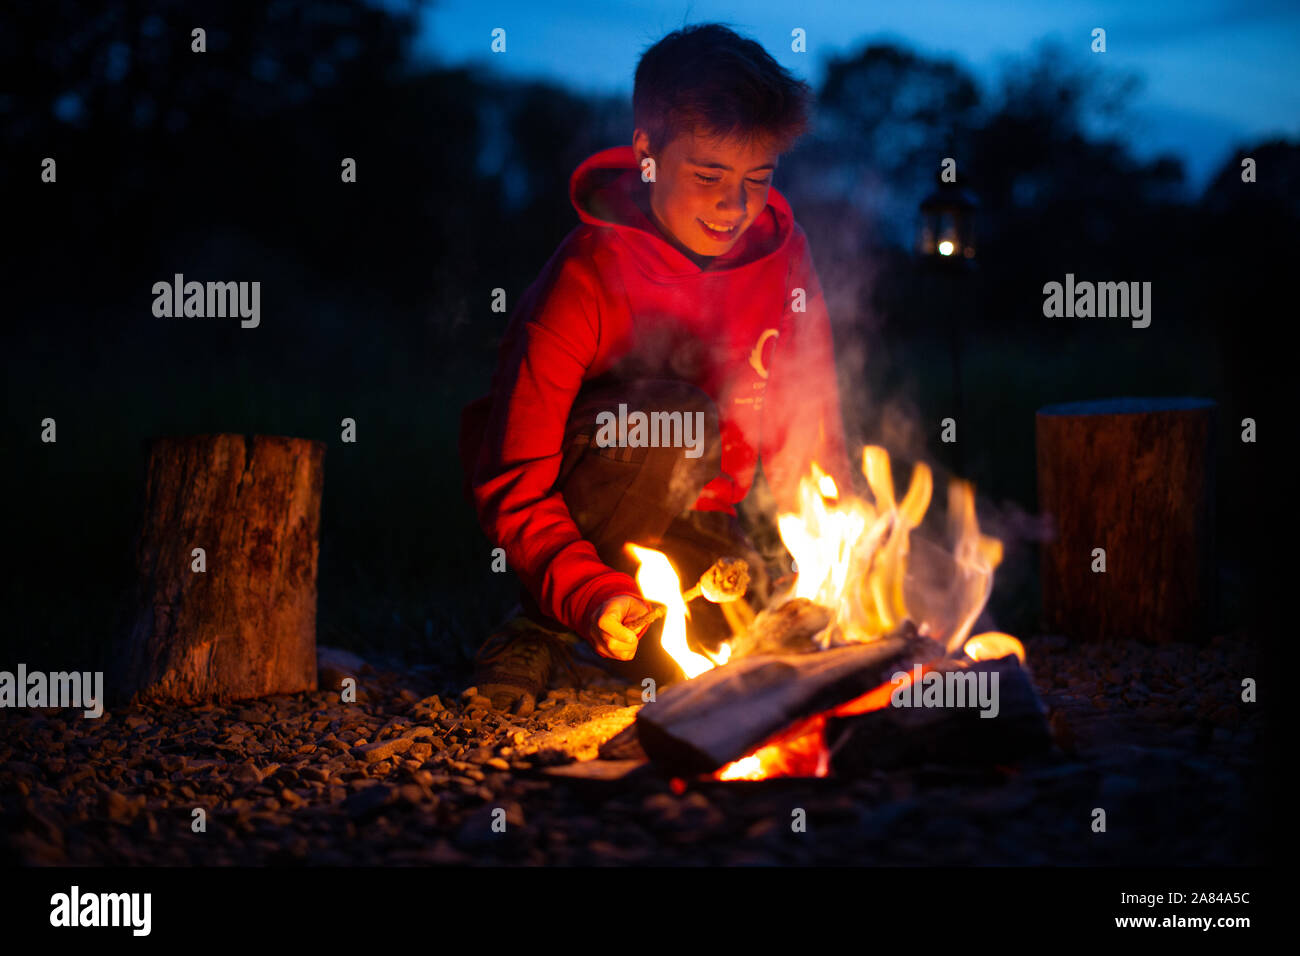 Ein kleiner Junge lächelt, während er beim Campen Marshmallows auf einem offenen Feuer kocht. Stockfoto